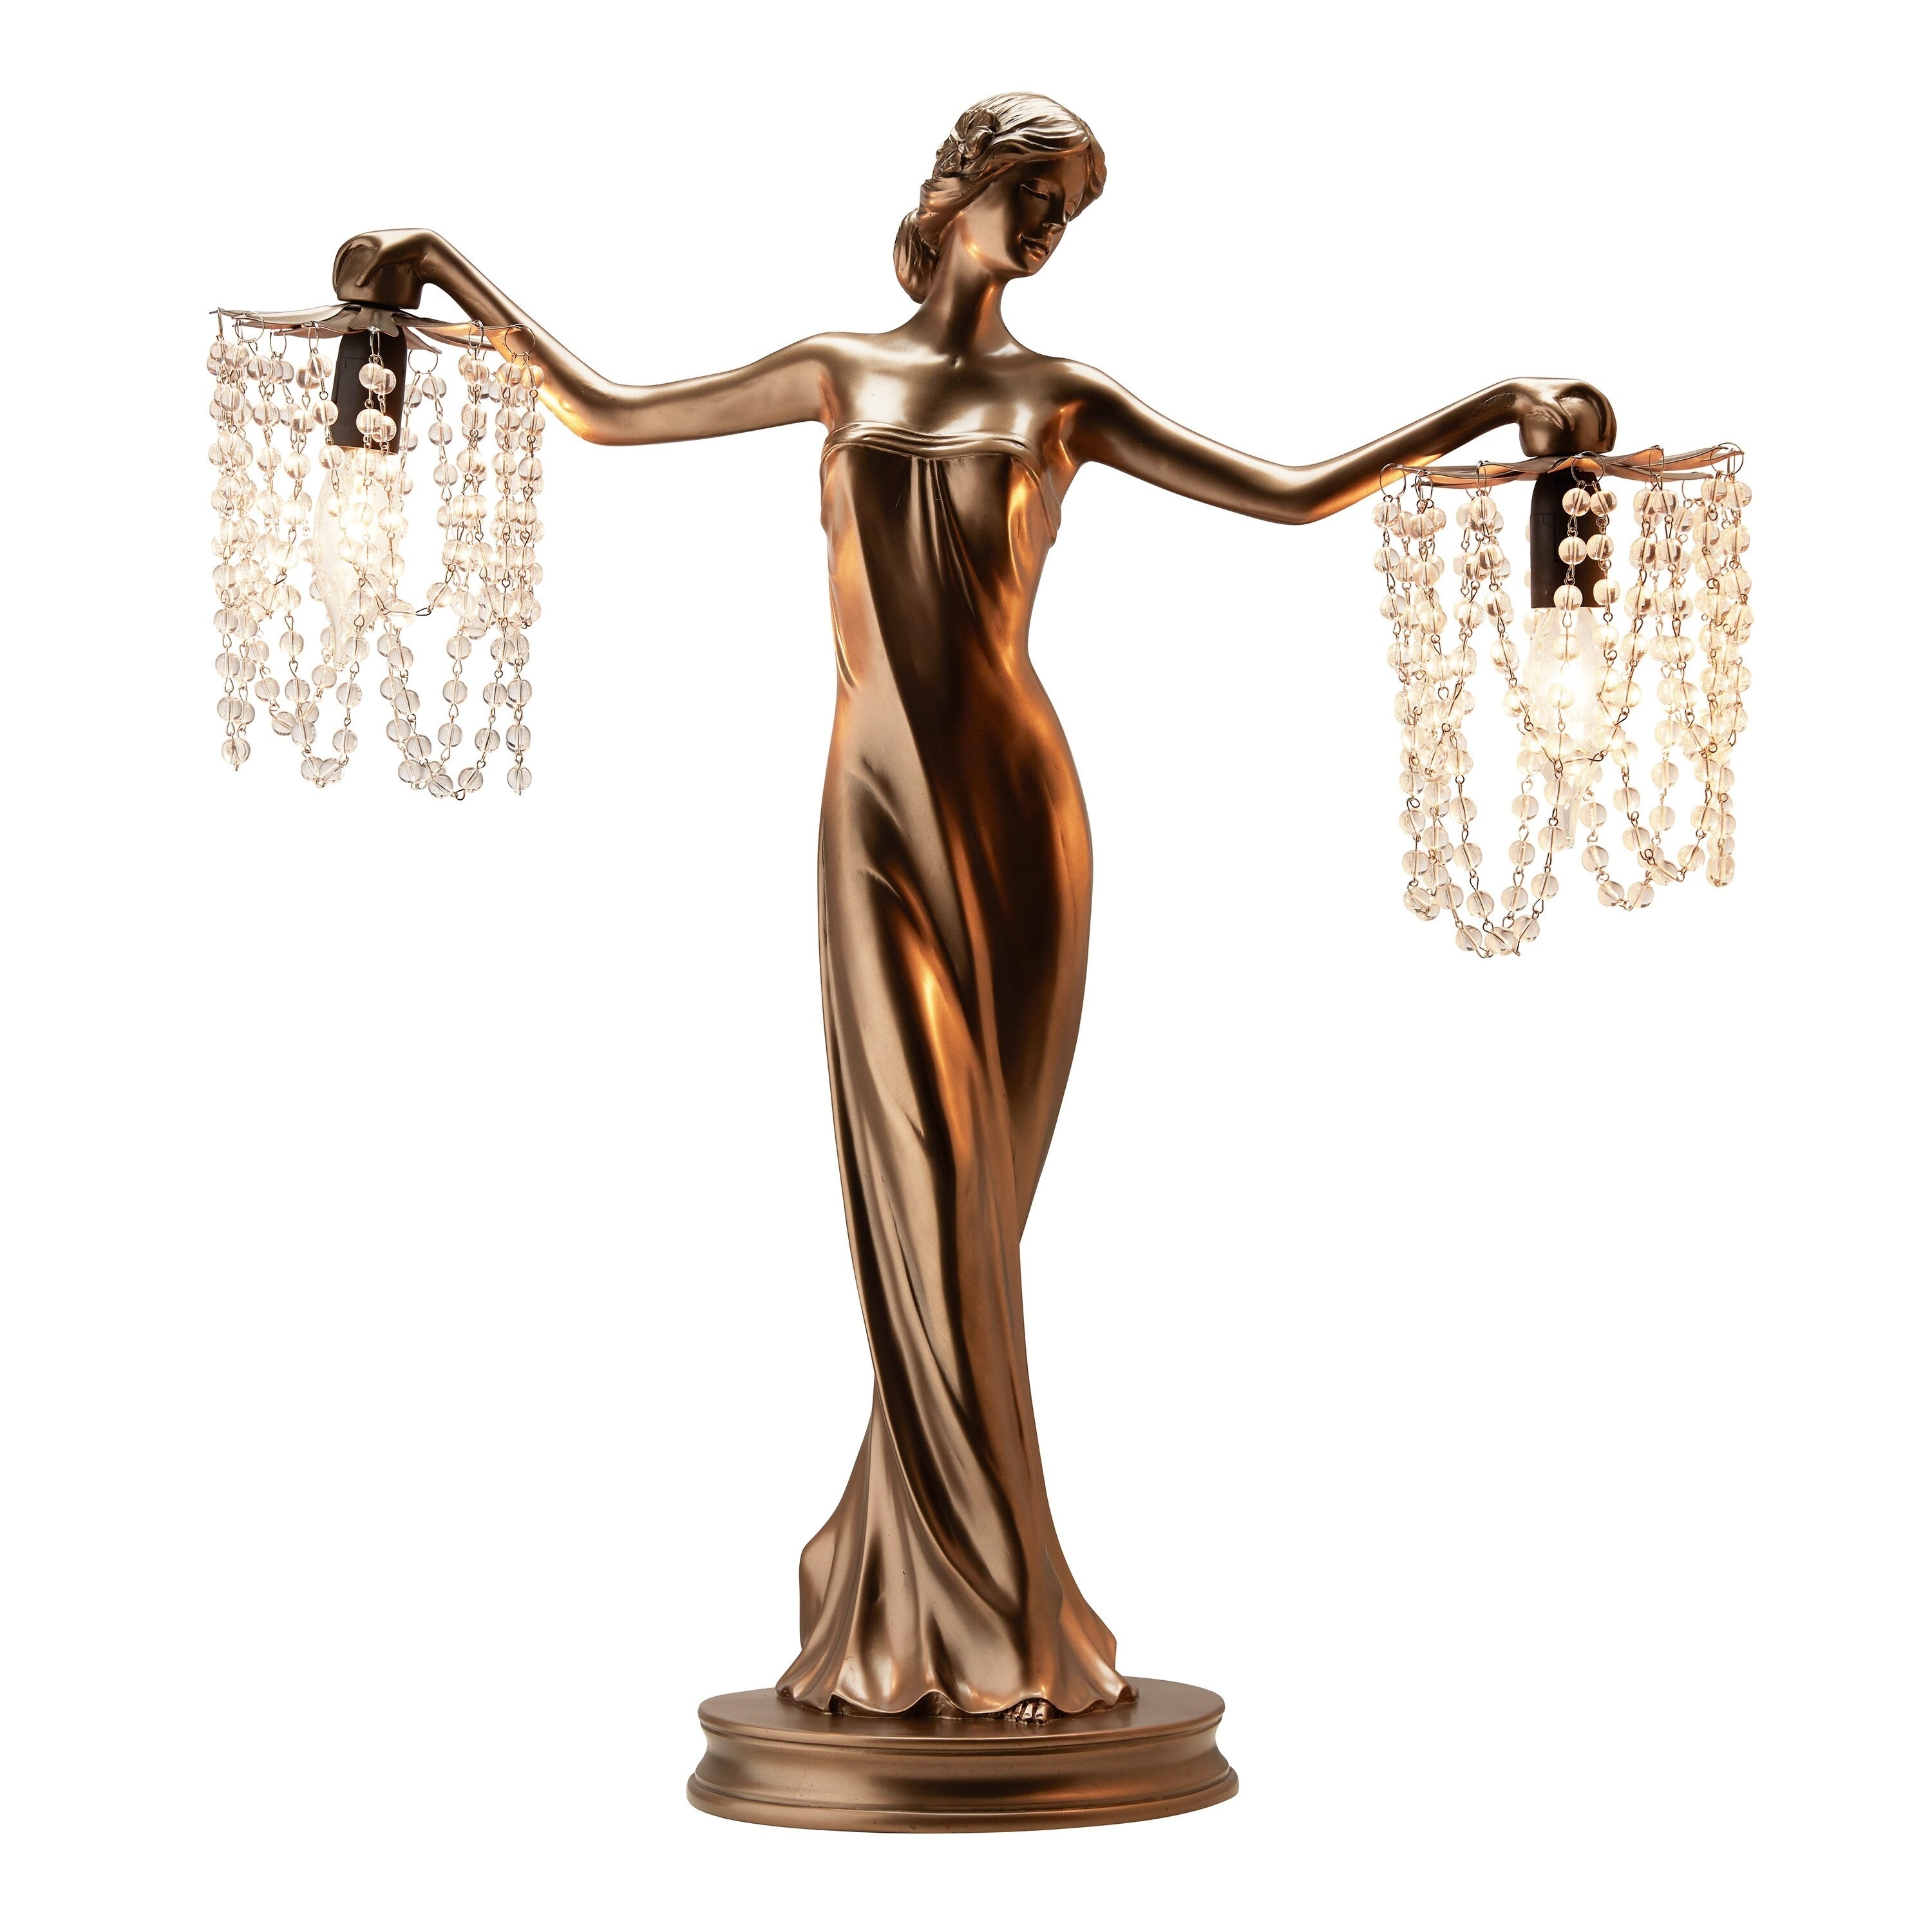 Art nouveau lamp woman as a decorative accent